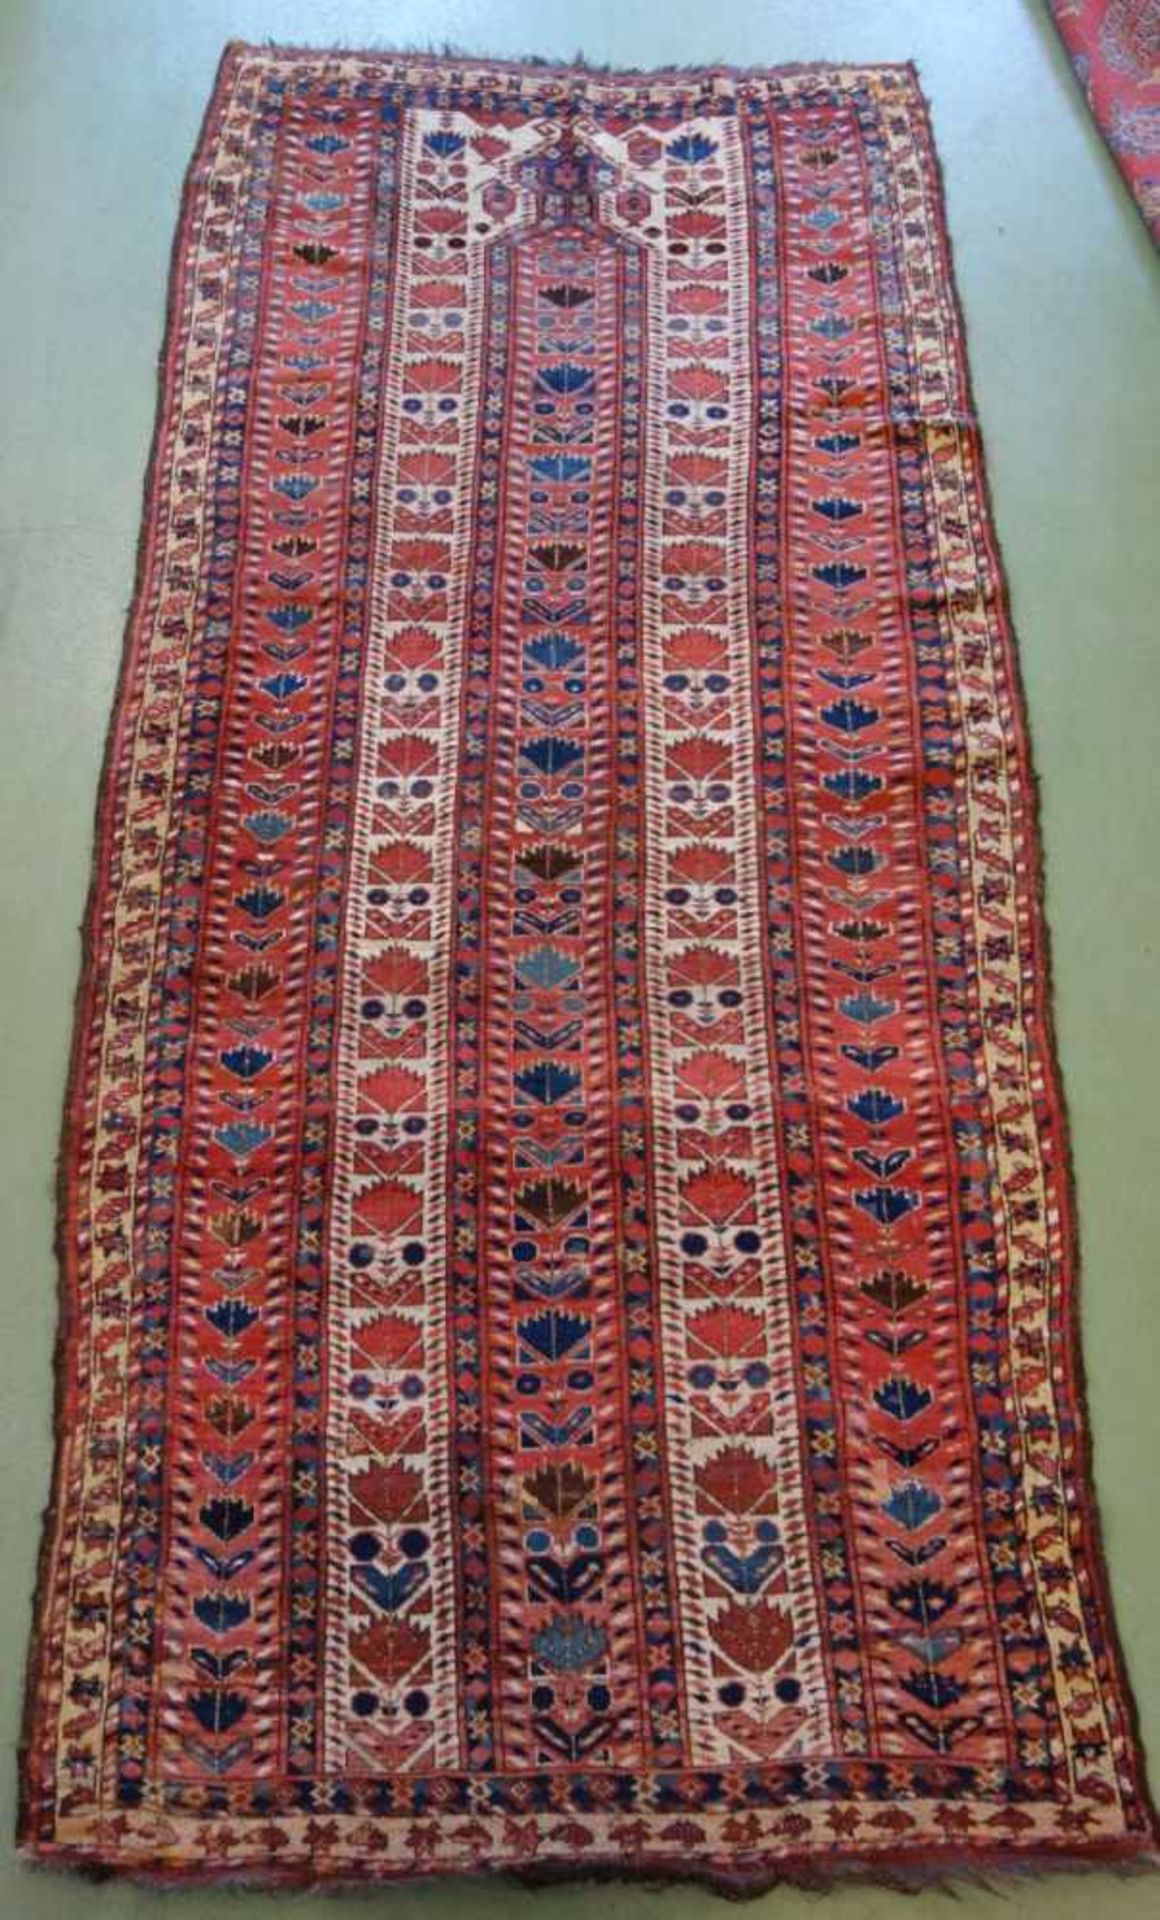 SCHMALER BESCHIR GEBETSTEPPICH / prayer rug, wohl 2. H. 19. Jh., Turkmenistan / Ersari-Beschir (